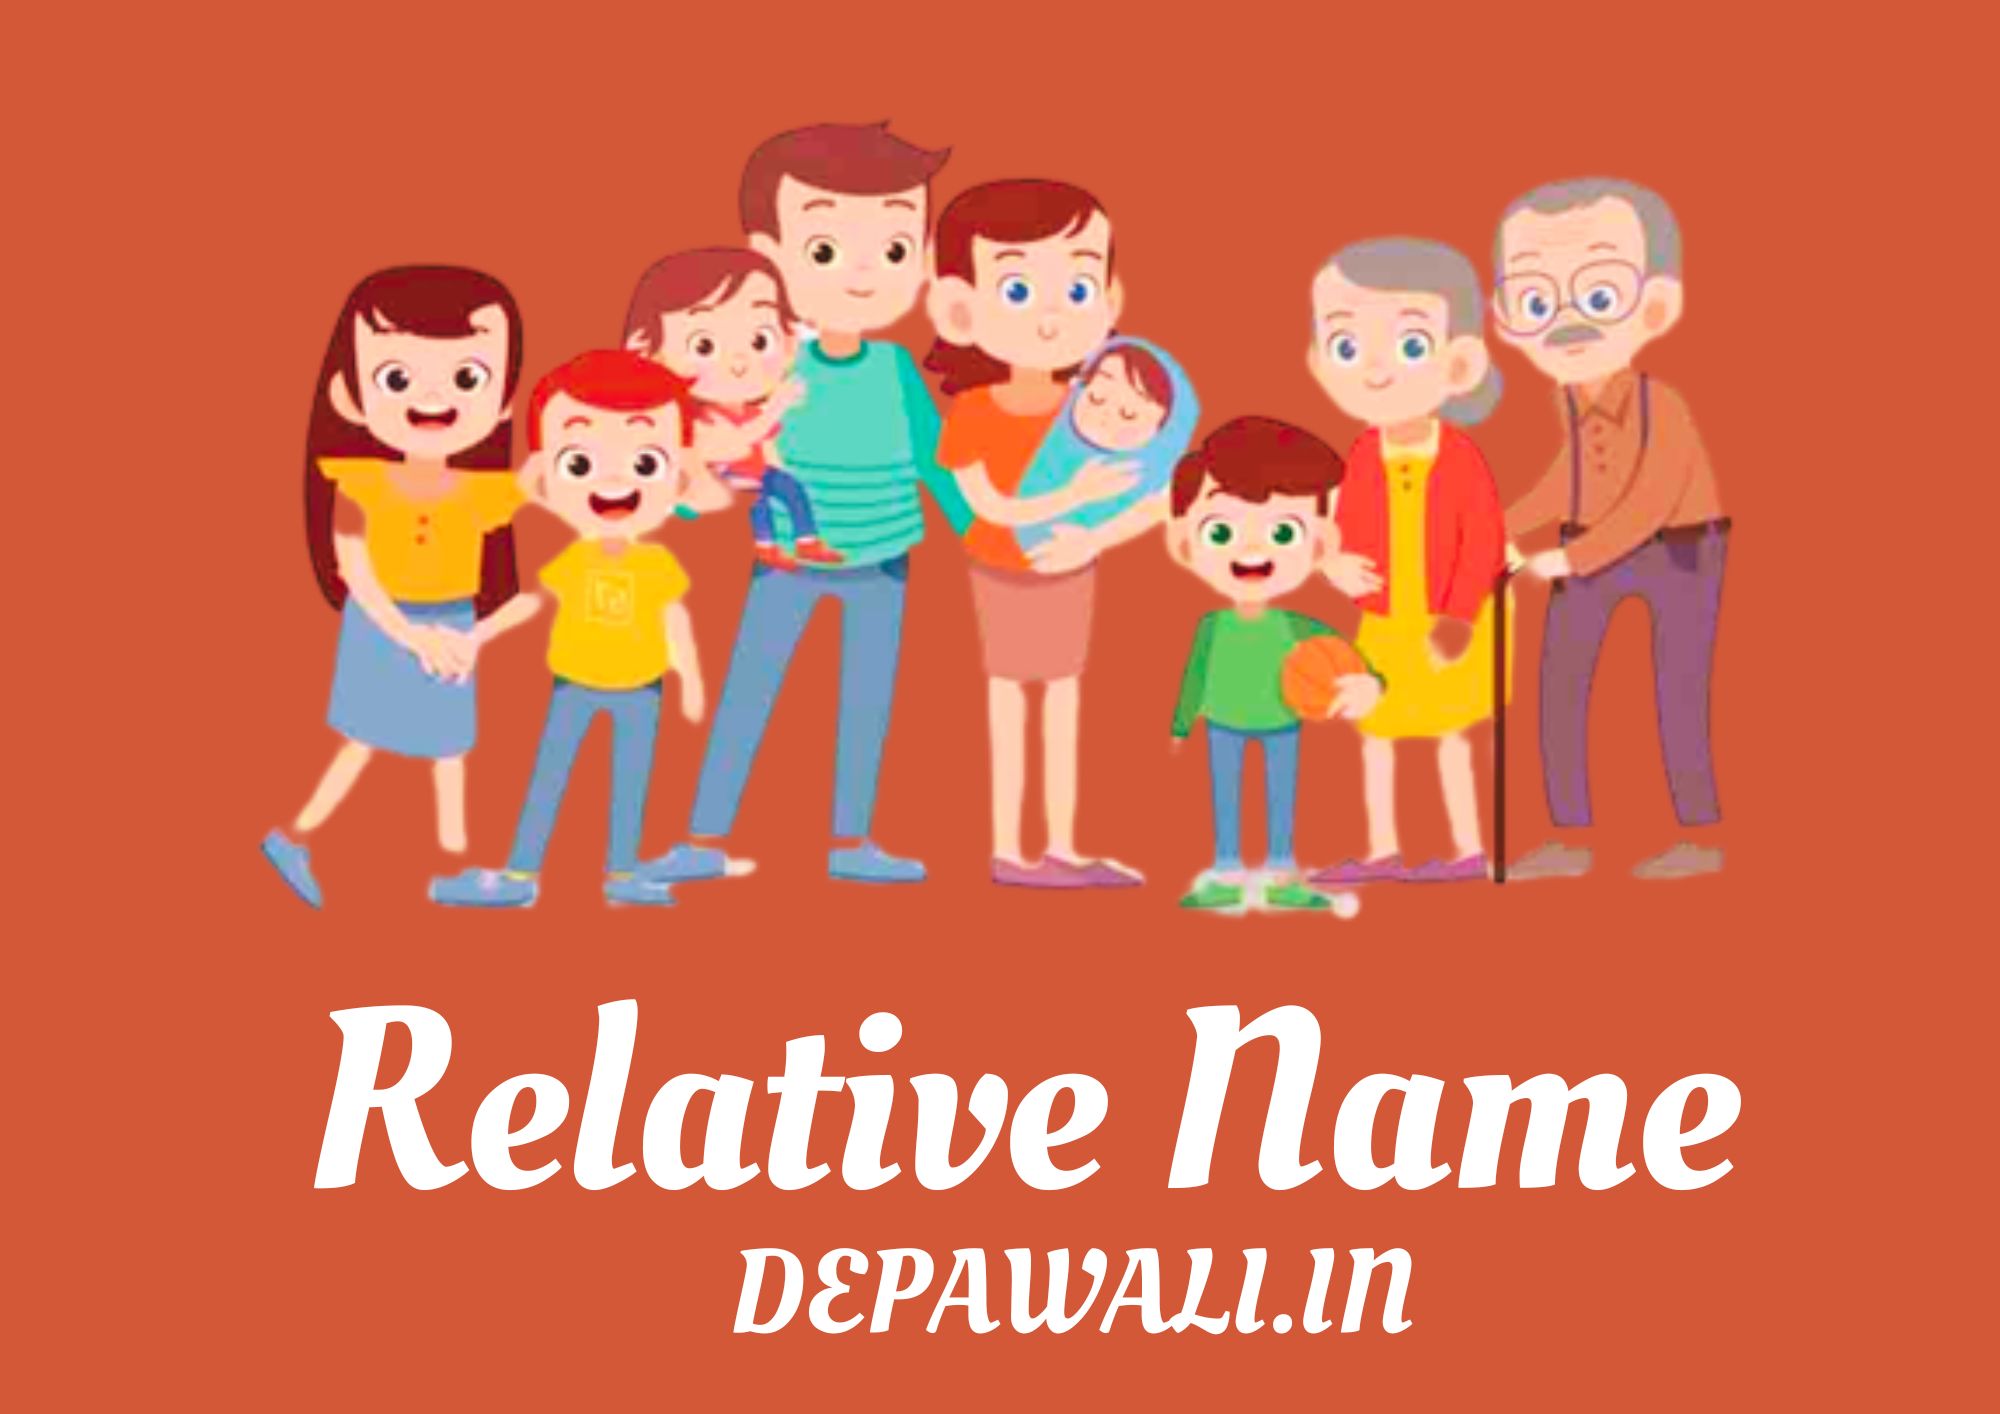 All Relative Name In Hindi And English - सभी रिश्तेदारों के नाम इंग्लिश में, हिंदी में - All Relative Name In English And Hindi